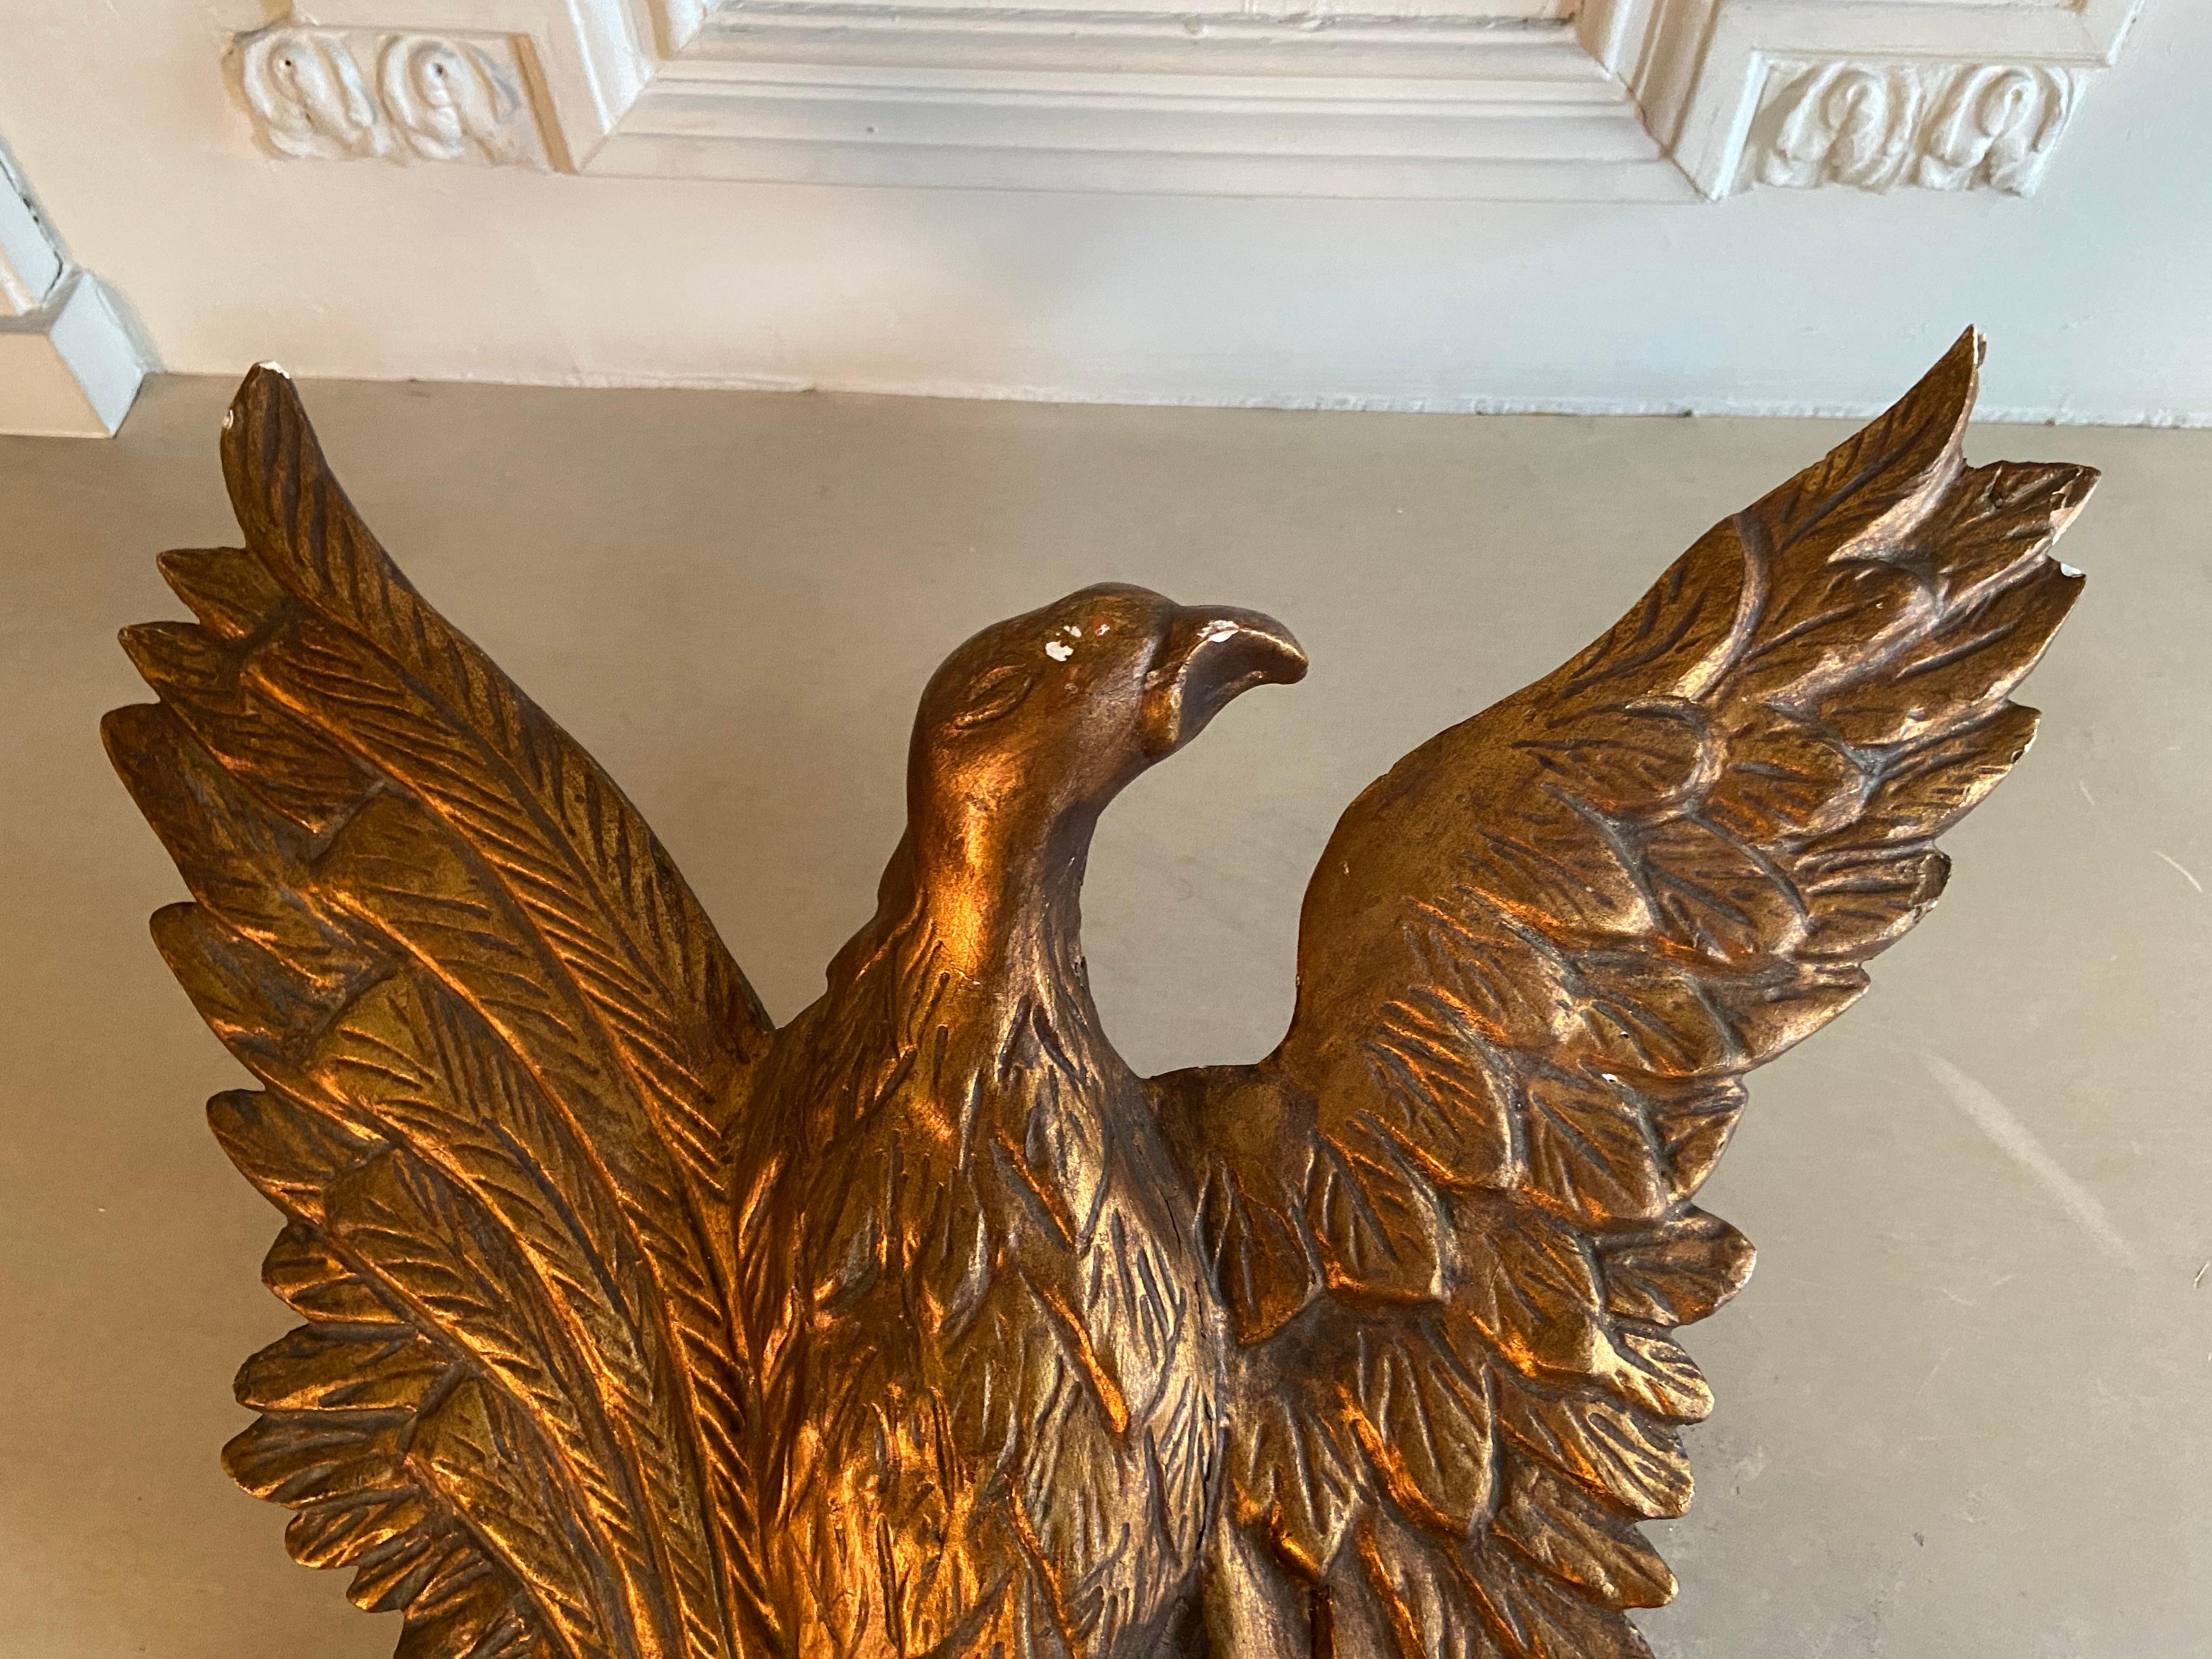 Miroir Empire en bois doré à décor d'aigle 
miroir du XIXe siècle en bois doré. Empire. Aigle aux ailes déployées. État tel que vu sur les photos.